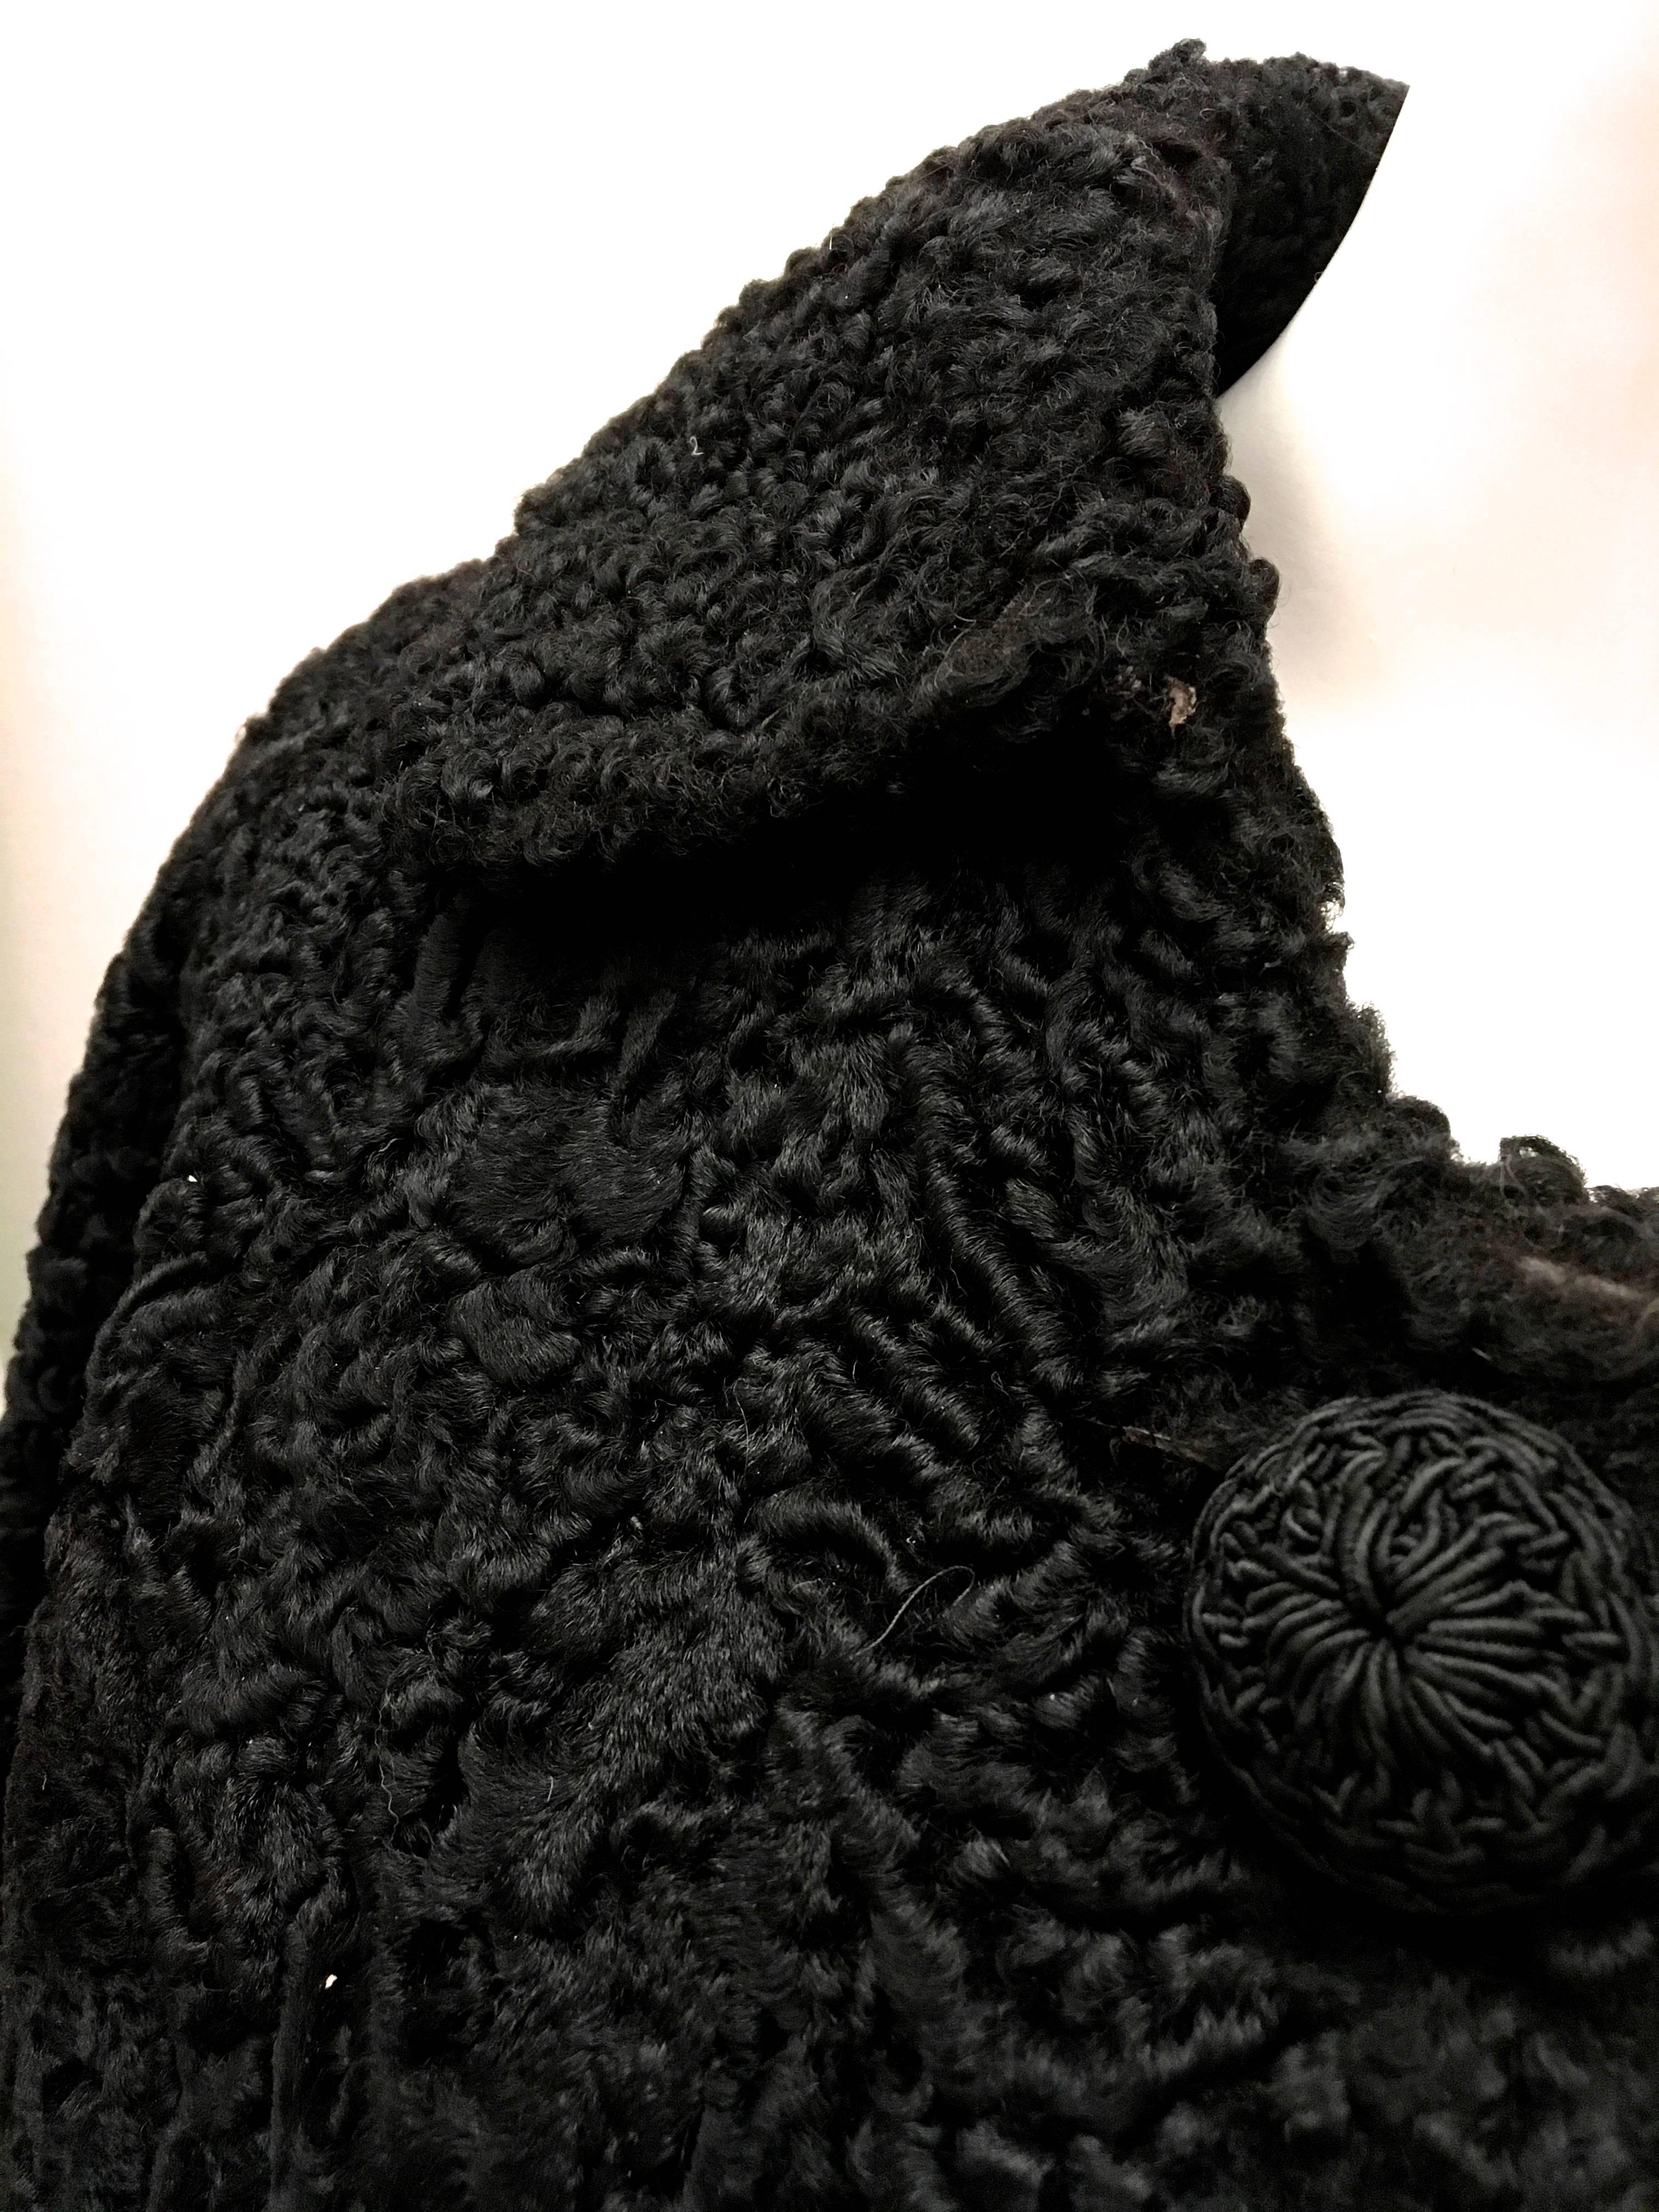 Women's or Men's Persian Lamb Coat - Black For Sale